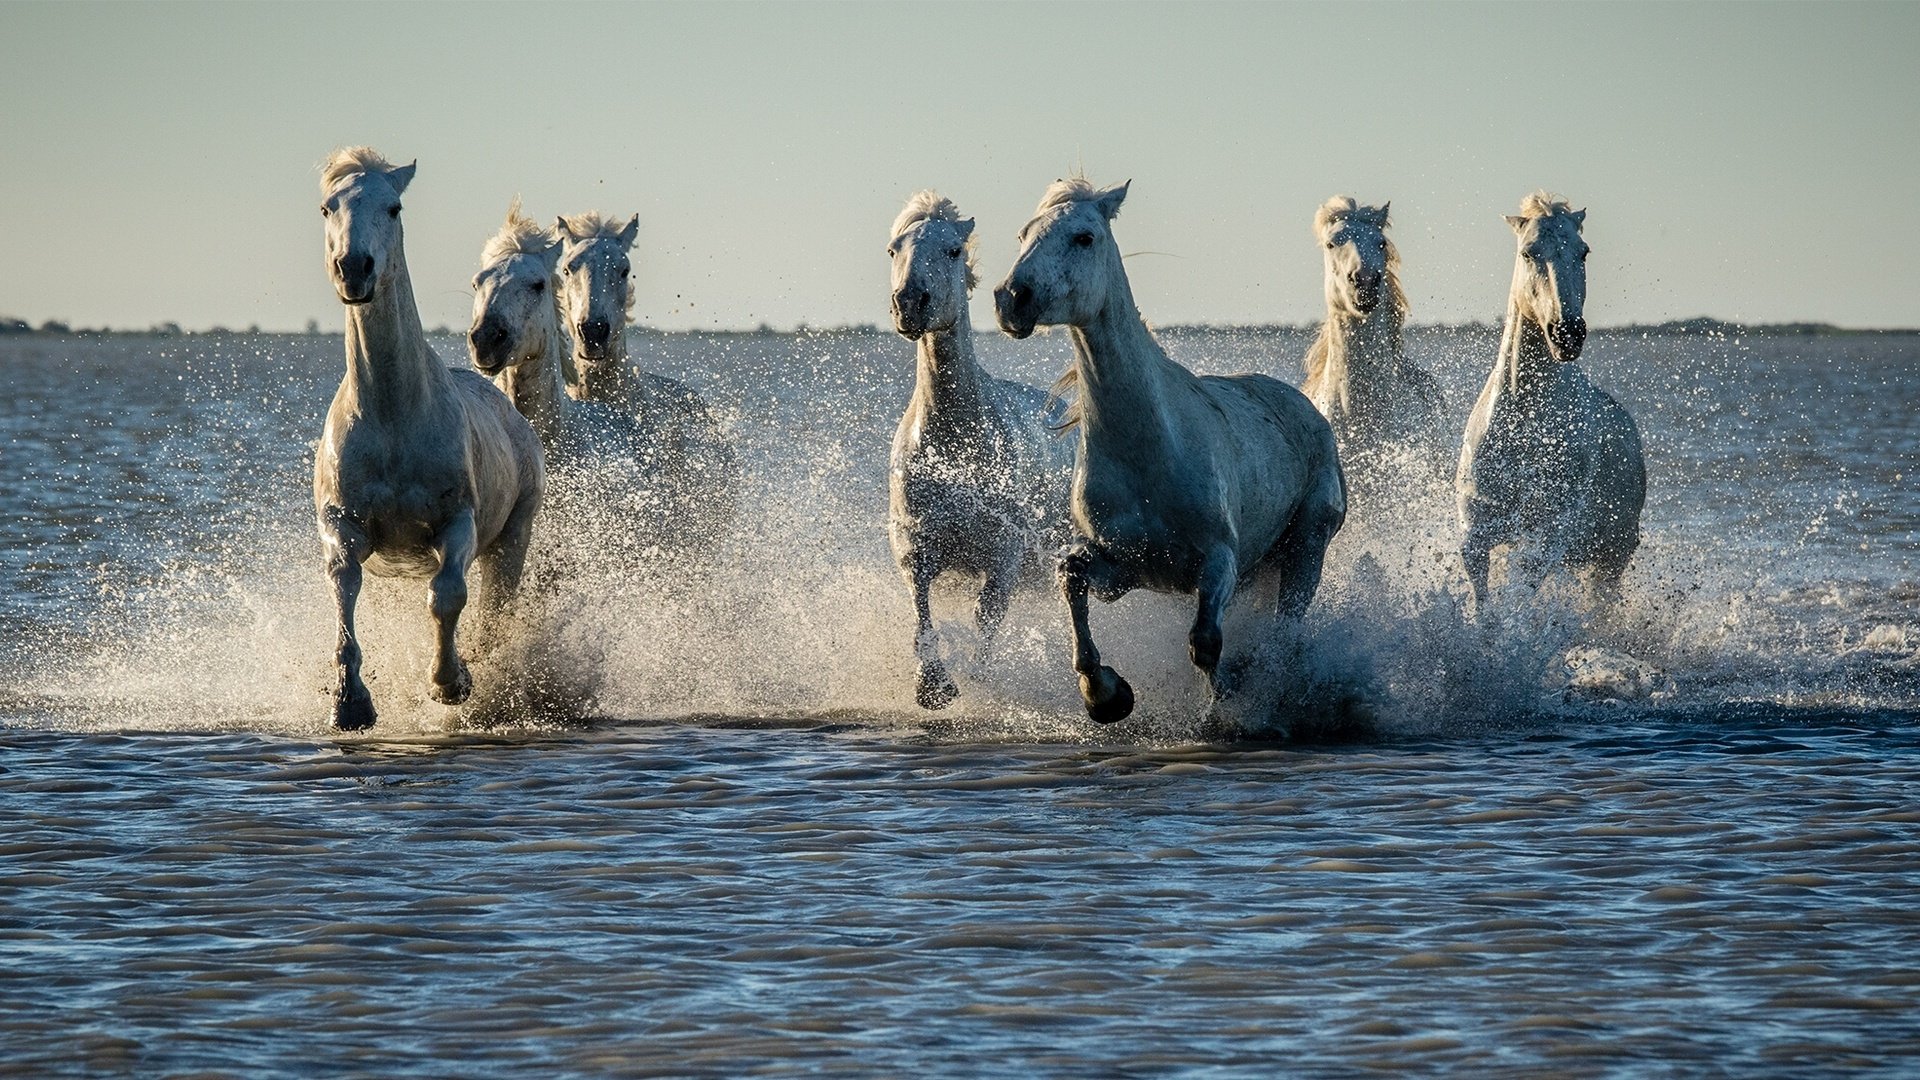 Hình ảnh này kết hợp giữa vẻ đẹp của ngựa và những phong cảnh đẹp như đổ thác, đại dương, biển, hồ, sông sẽ khiến bạn cảm thấy như đang phiêu lưu trong một thế giới hoang dã đầy mê hoặc.